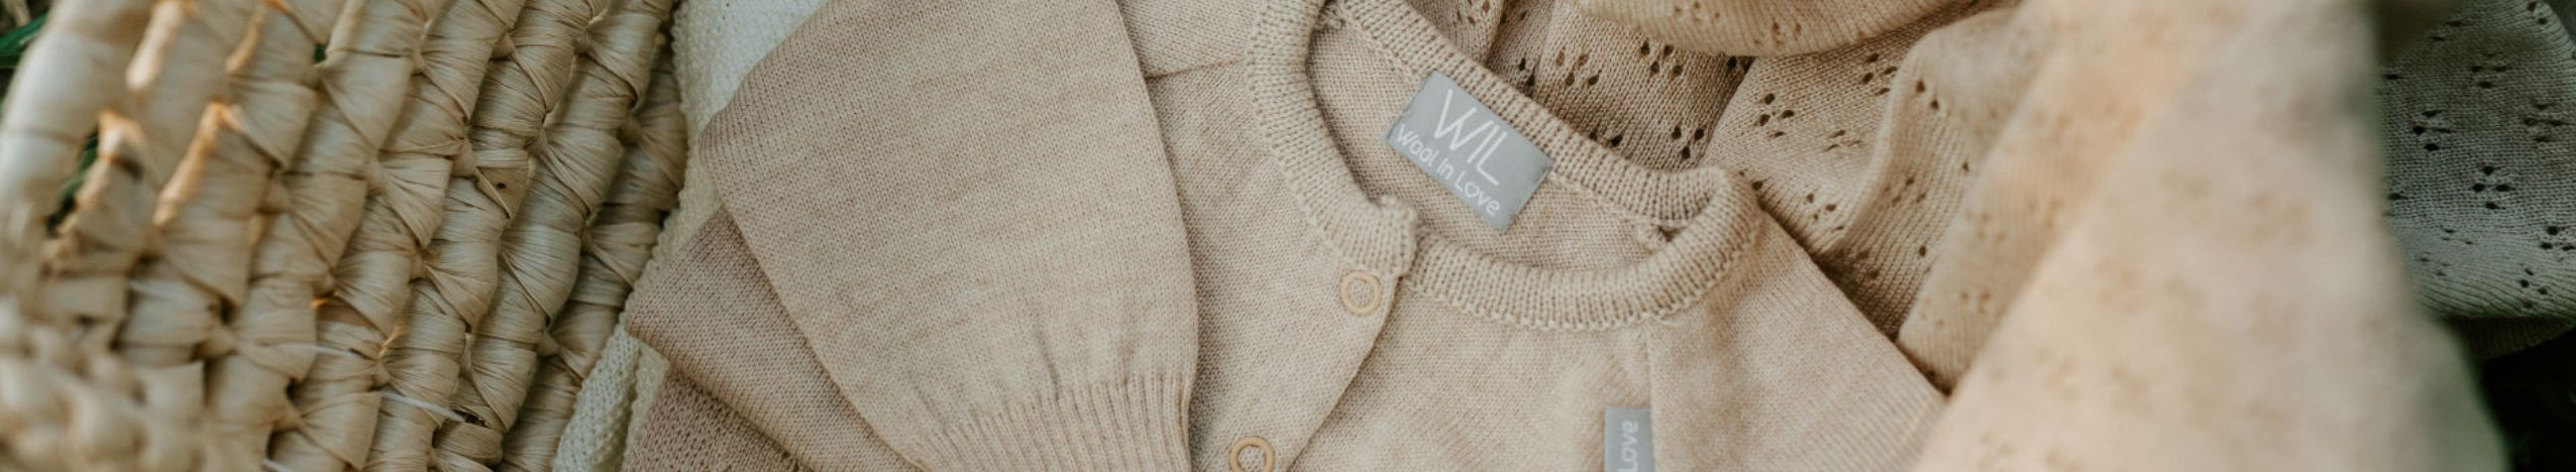 Wool In Love on spetsialiseerunud kvaliteetsete meriinovillaste rõivaste ja beebitekkide disainimisele ja tootmisele.